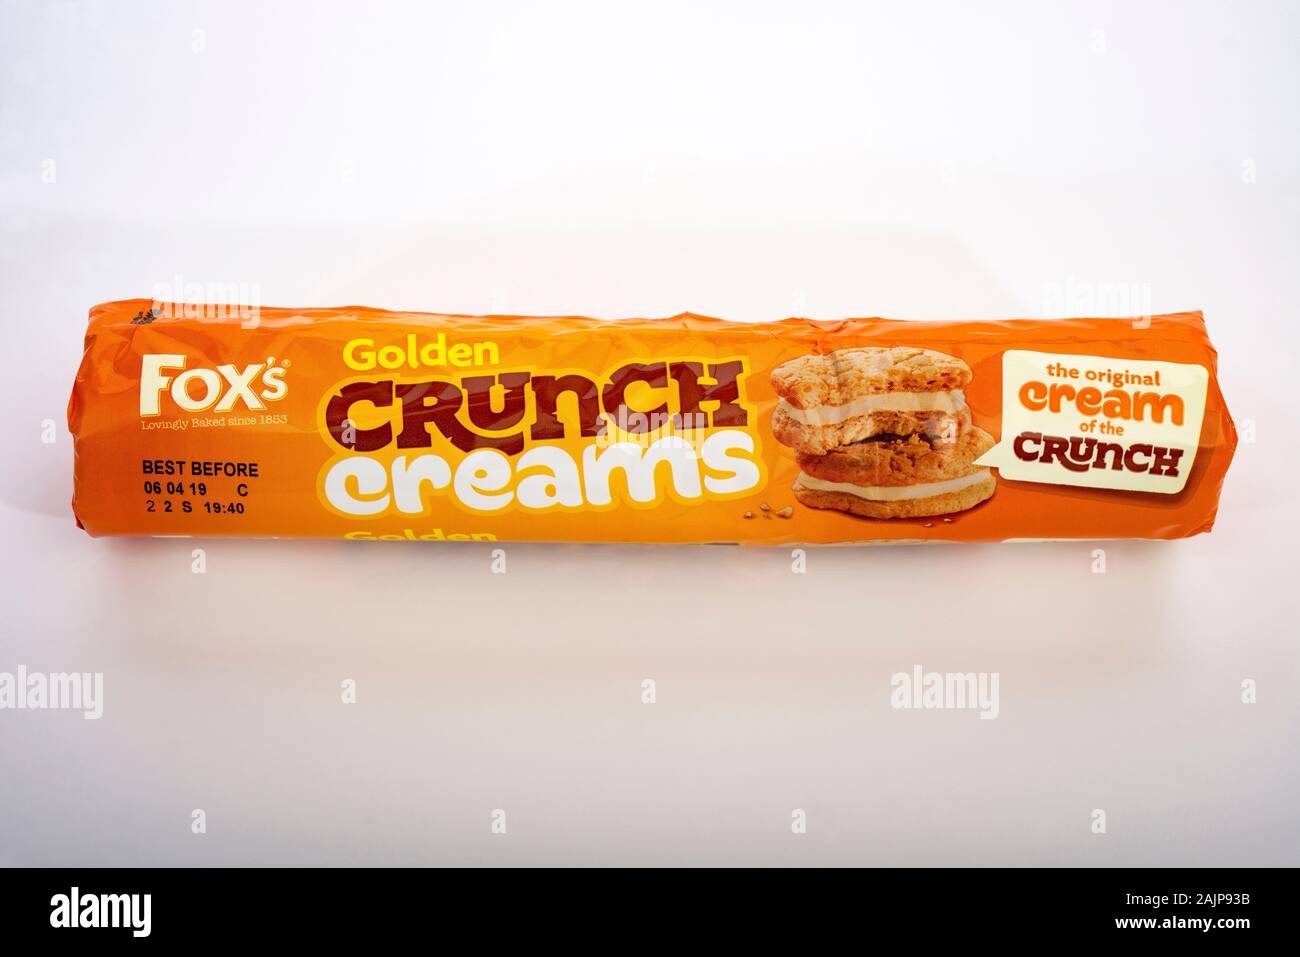 Fox's Golden crunch creams Stock Photo